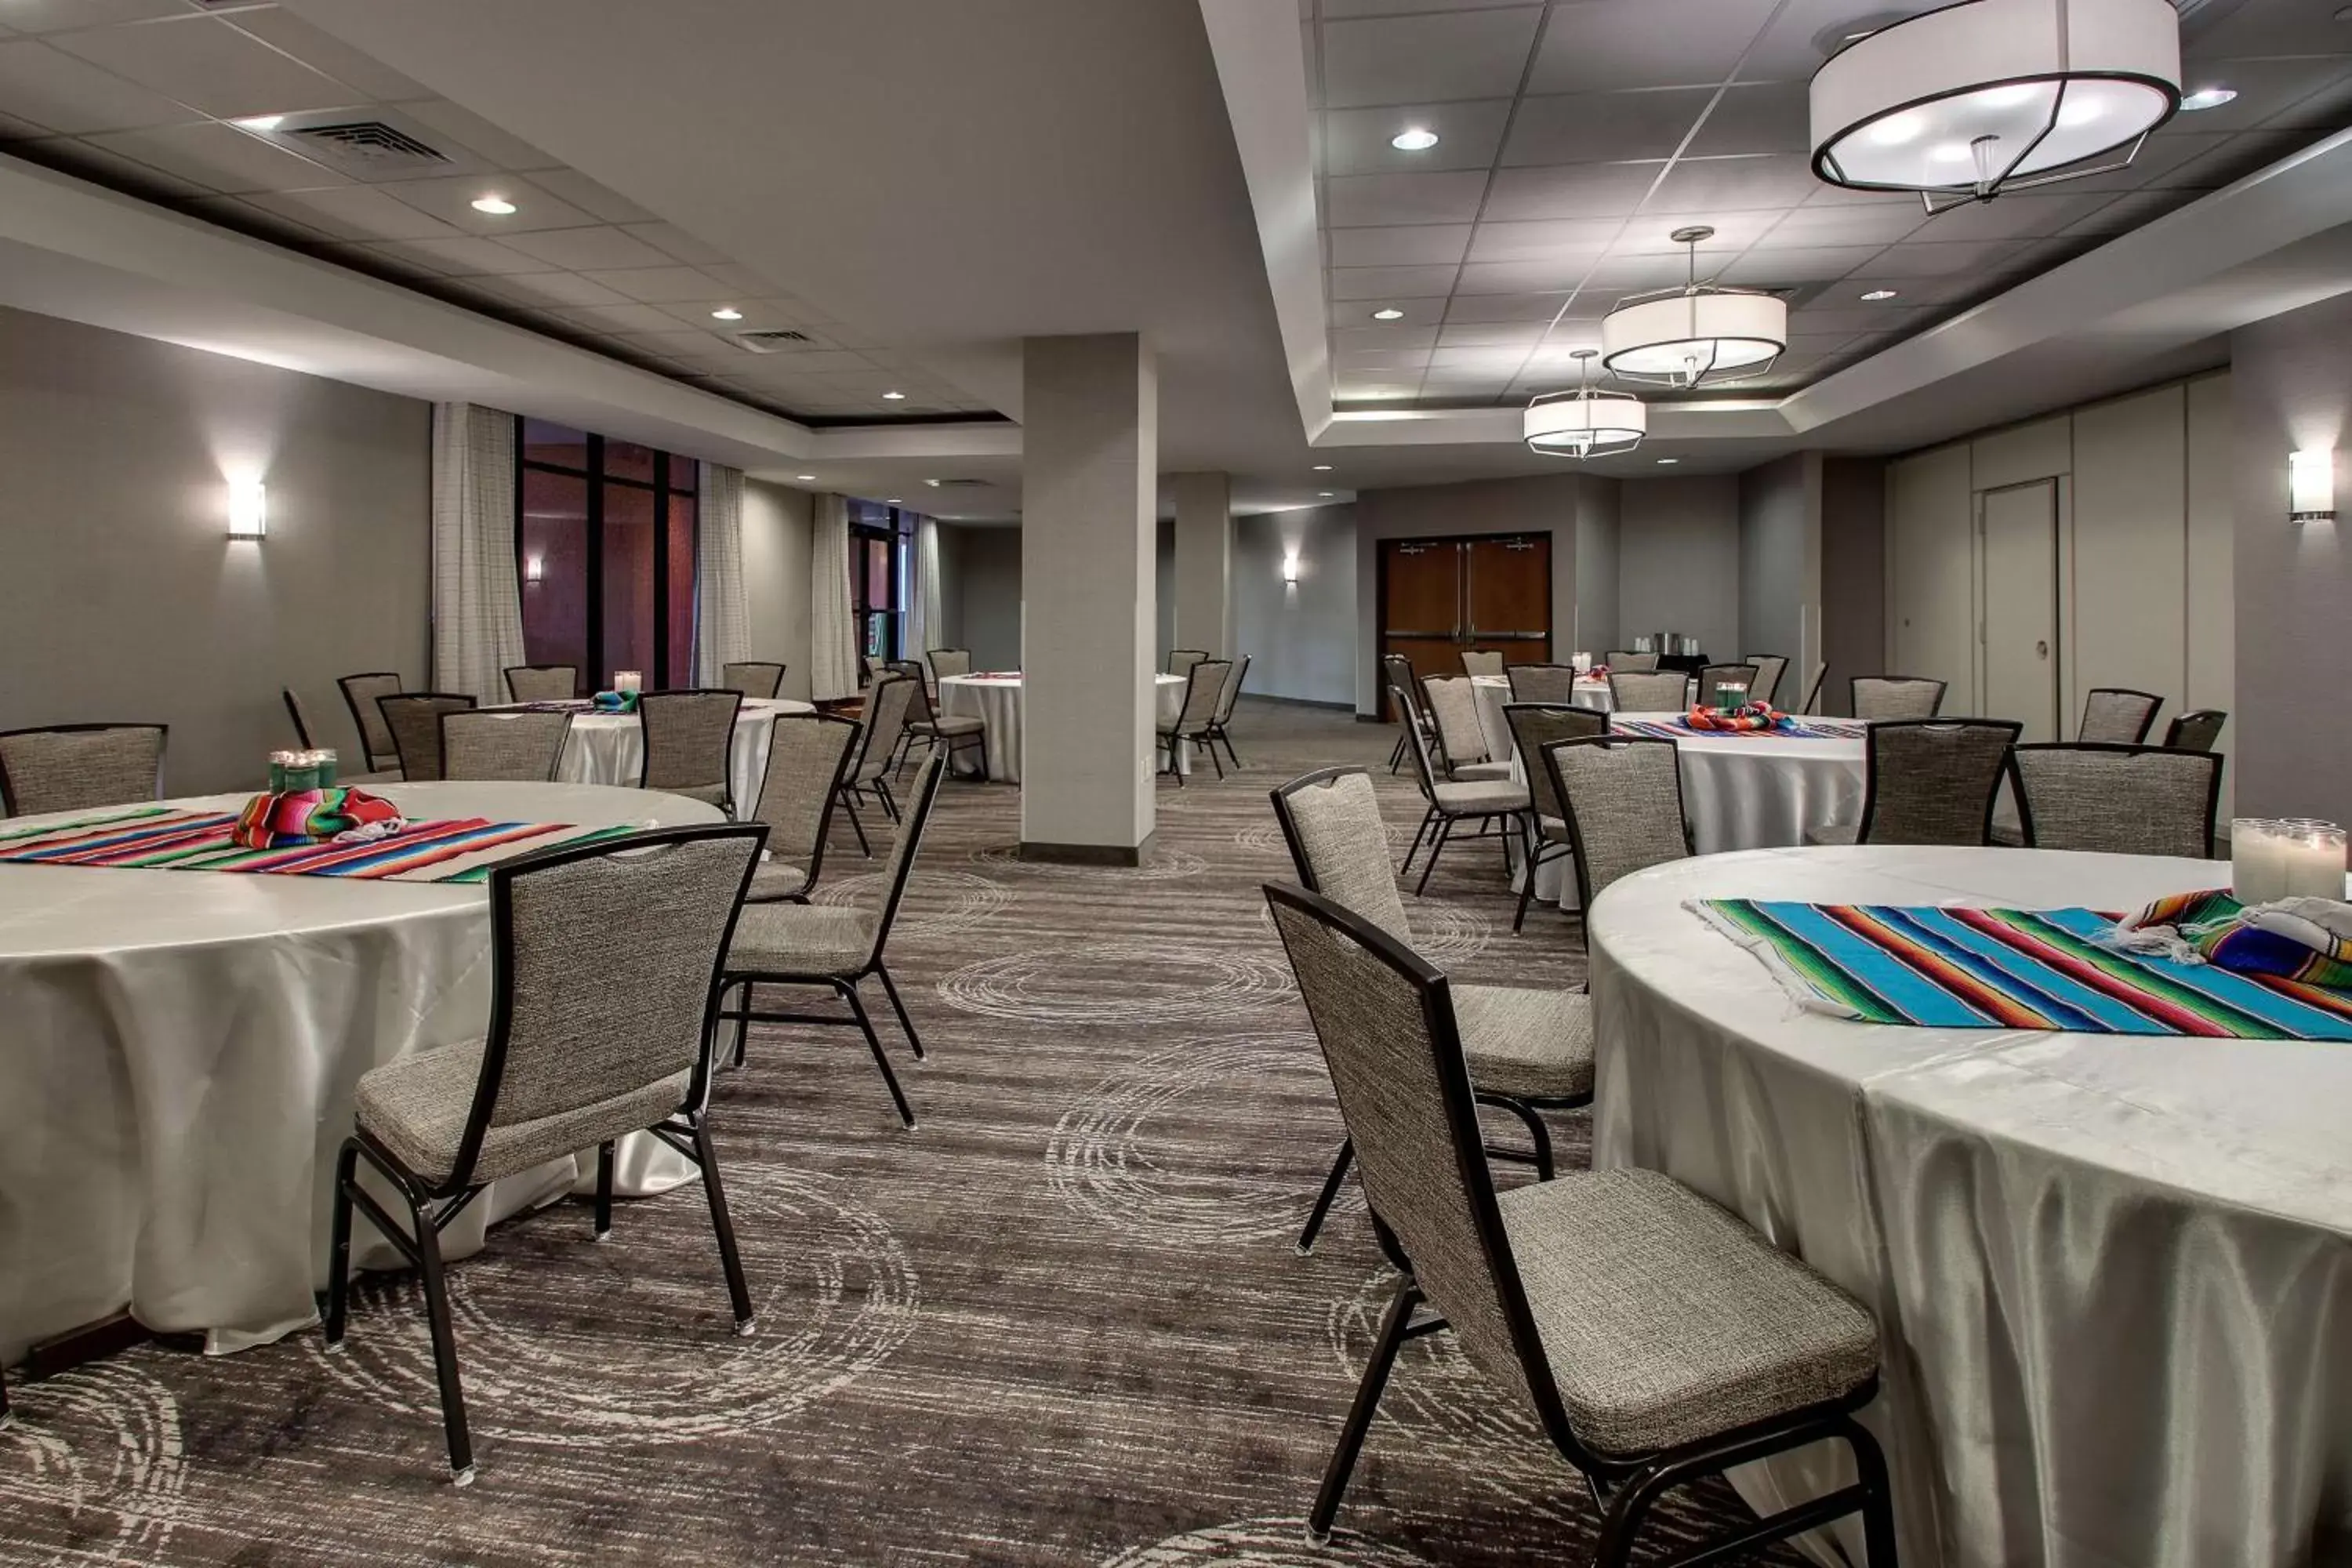 Meeting/conference room, Banquet Facilities in Drury Plaza Hotel San Antonio Riverwalk